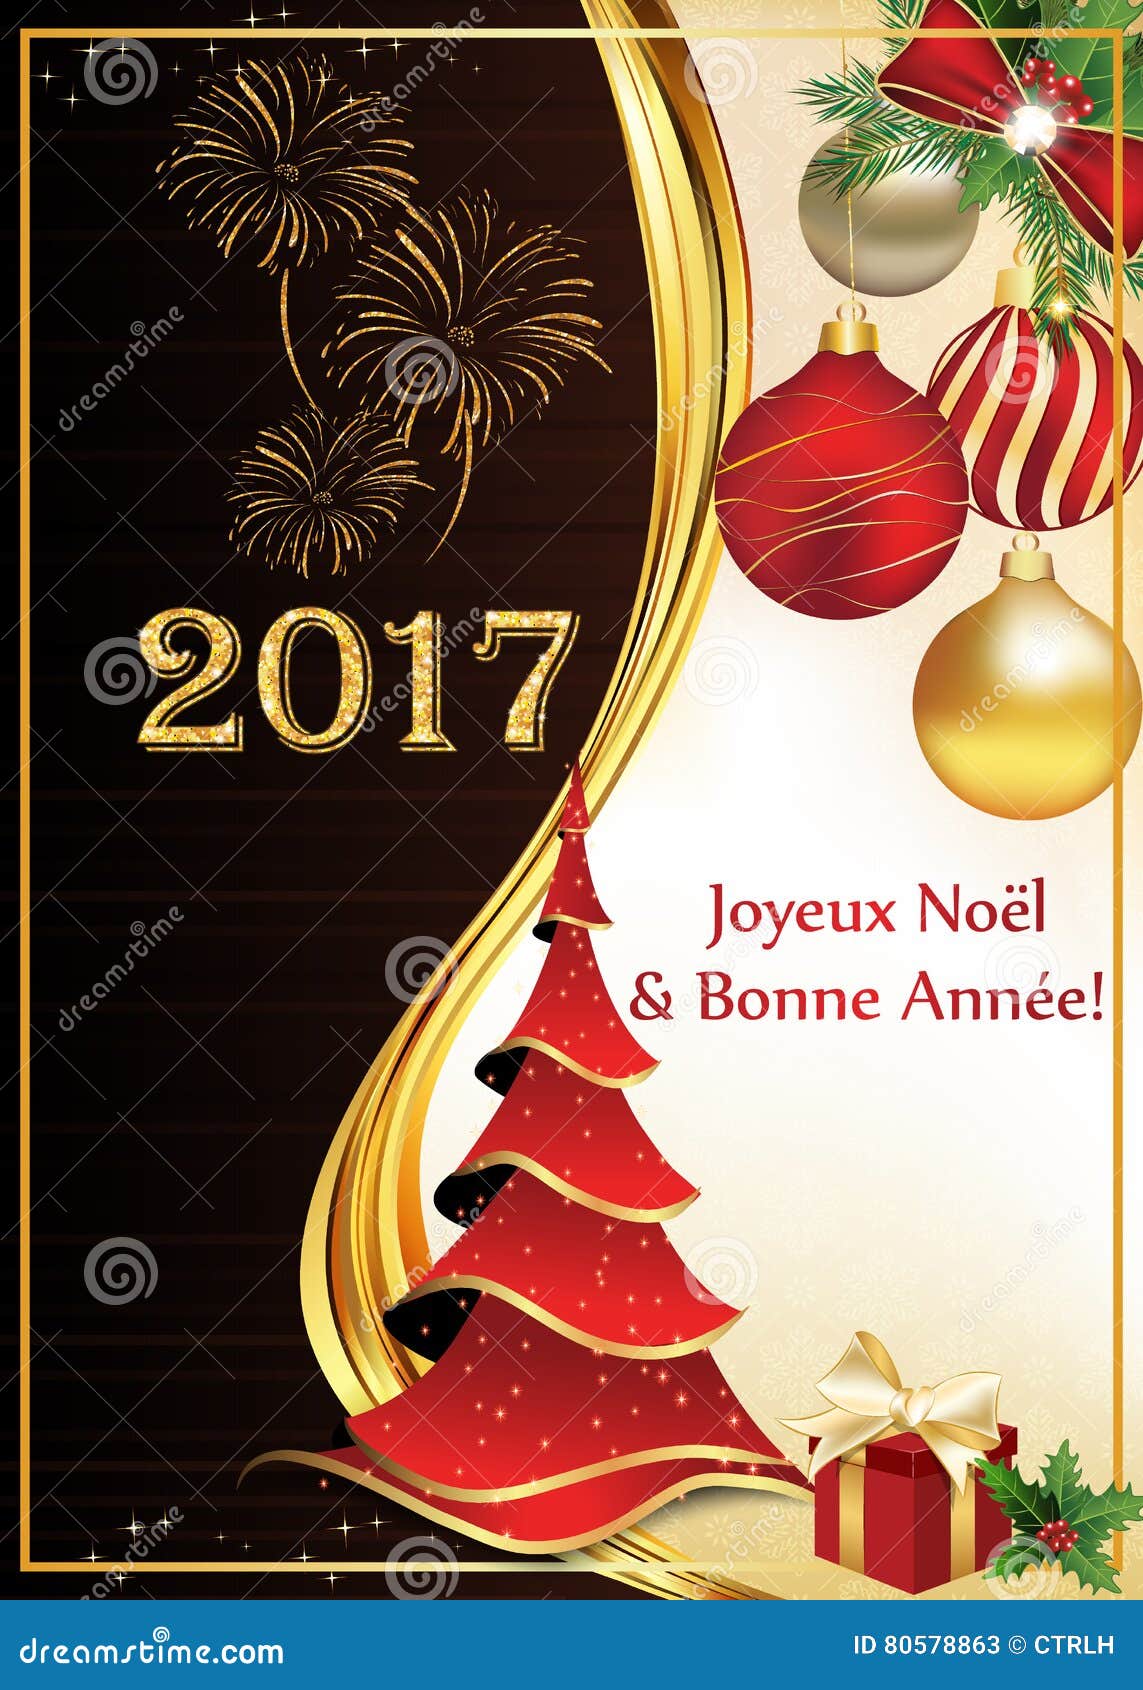 Buon Natale In Francese.Cartolina D Auguri Del Buon Anno E Di Buon Natale In Francese Illustrazione Di Stock Illustrazione Di Bacca Francese 80578863